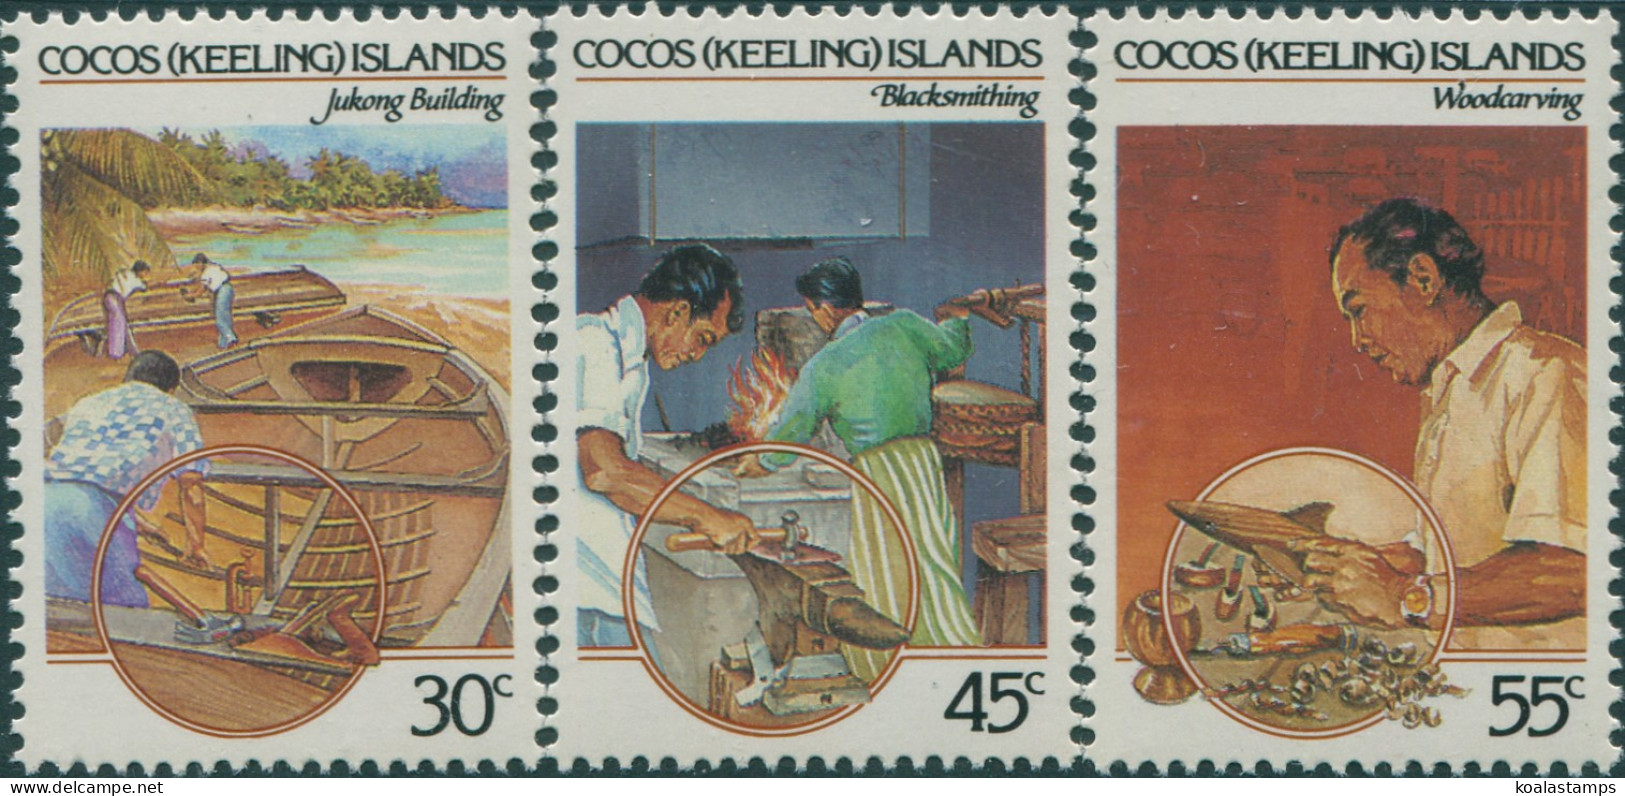 Cocos Islands 1985 SG126-128 Malay Culture Set MNH - Cocoseilanden